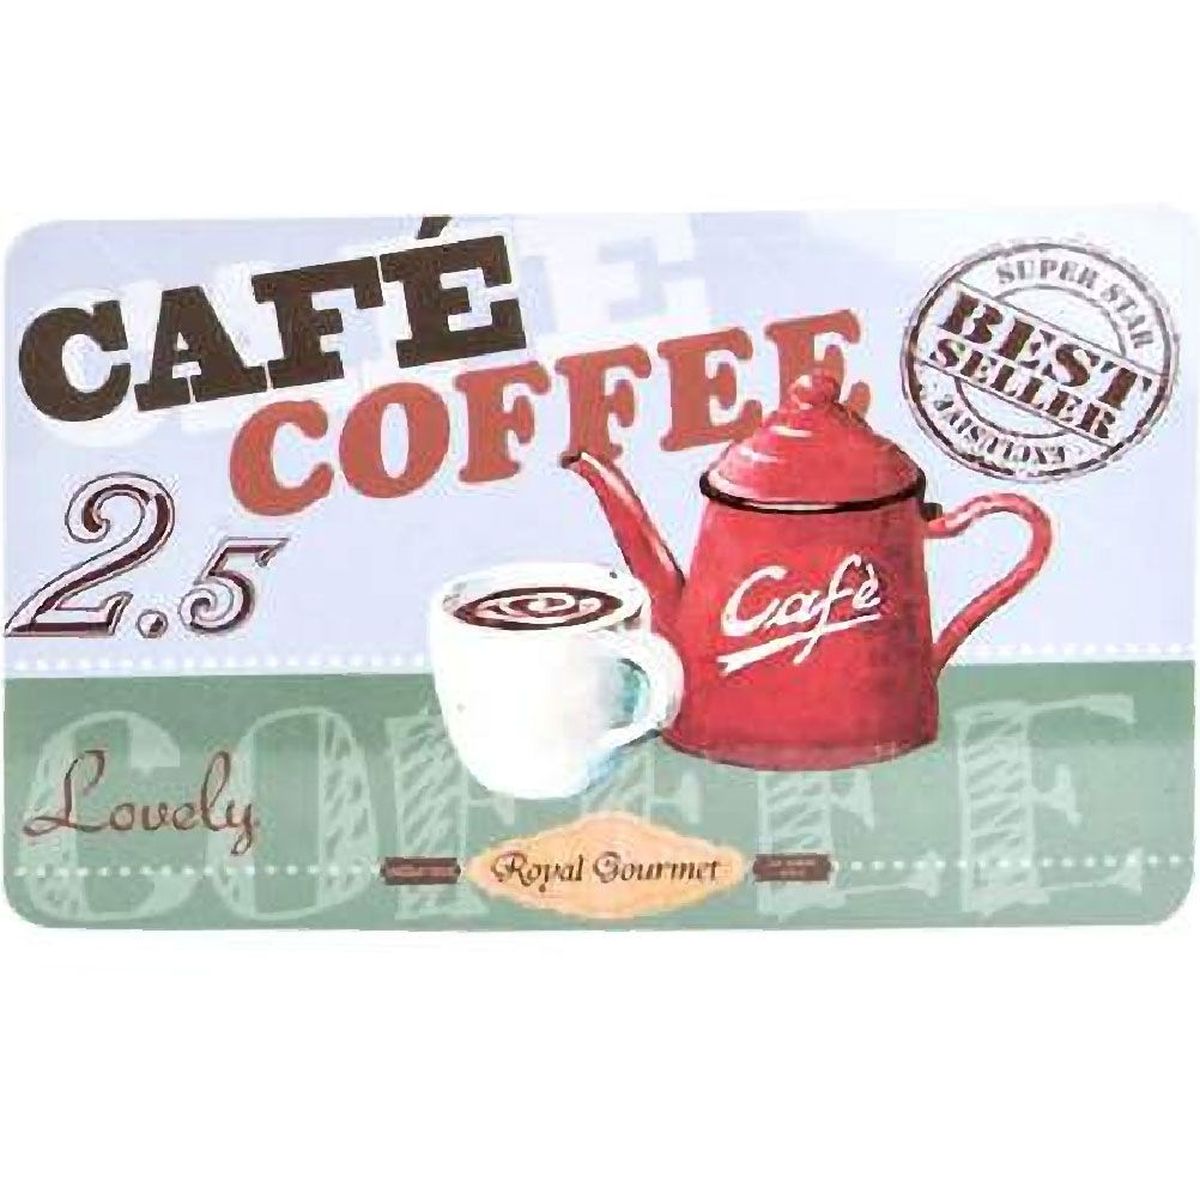 Café Coffee Cutting board 23 x 14 cm